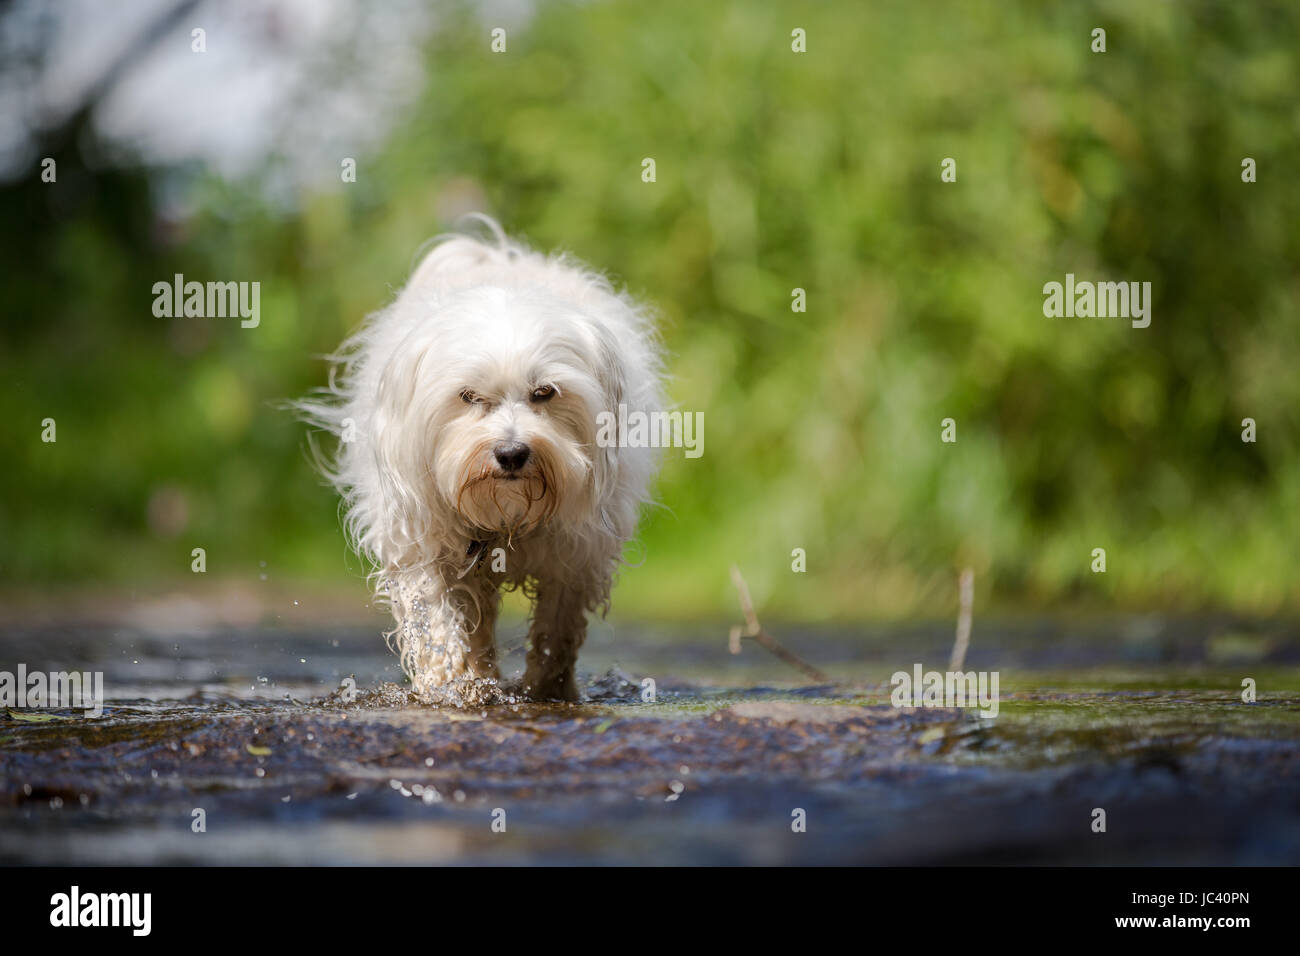 Ein kleiner weißer Hund läuft durch ein Bachbett auf den Fotografen zu. Stock Photo